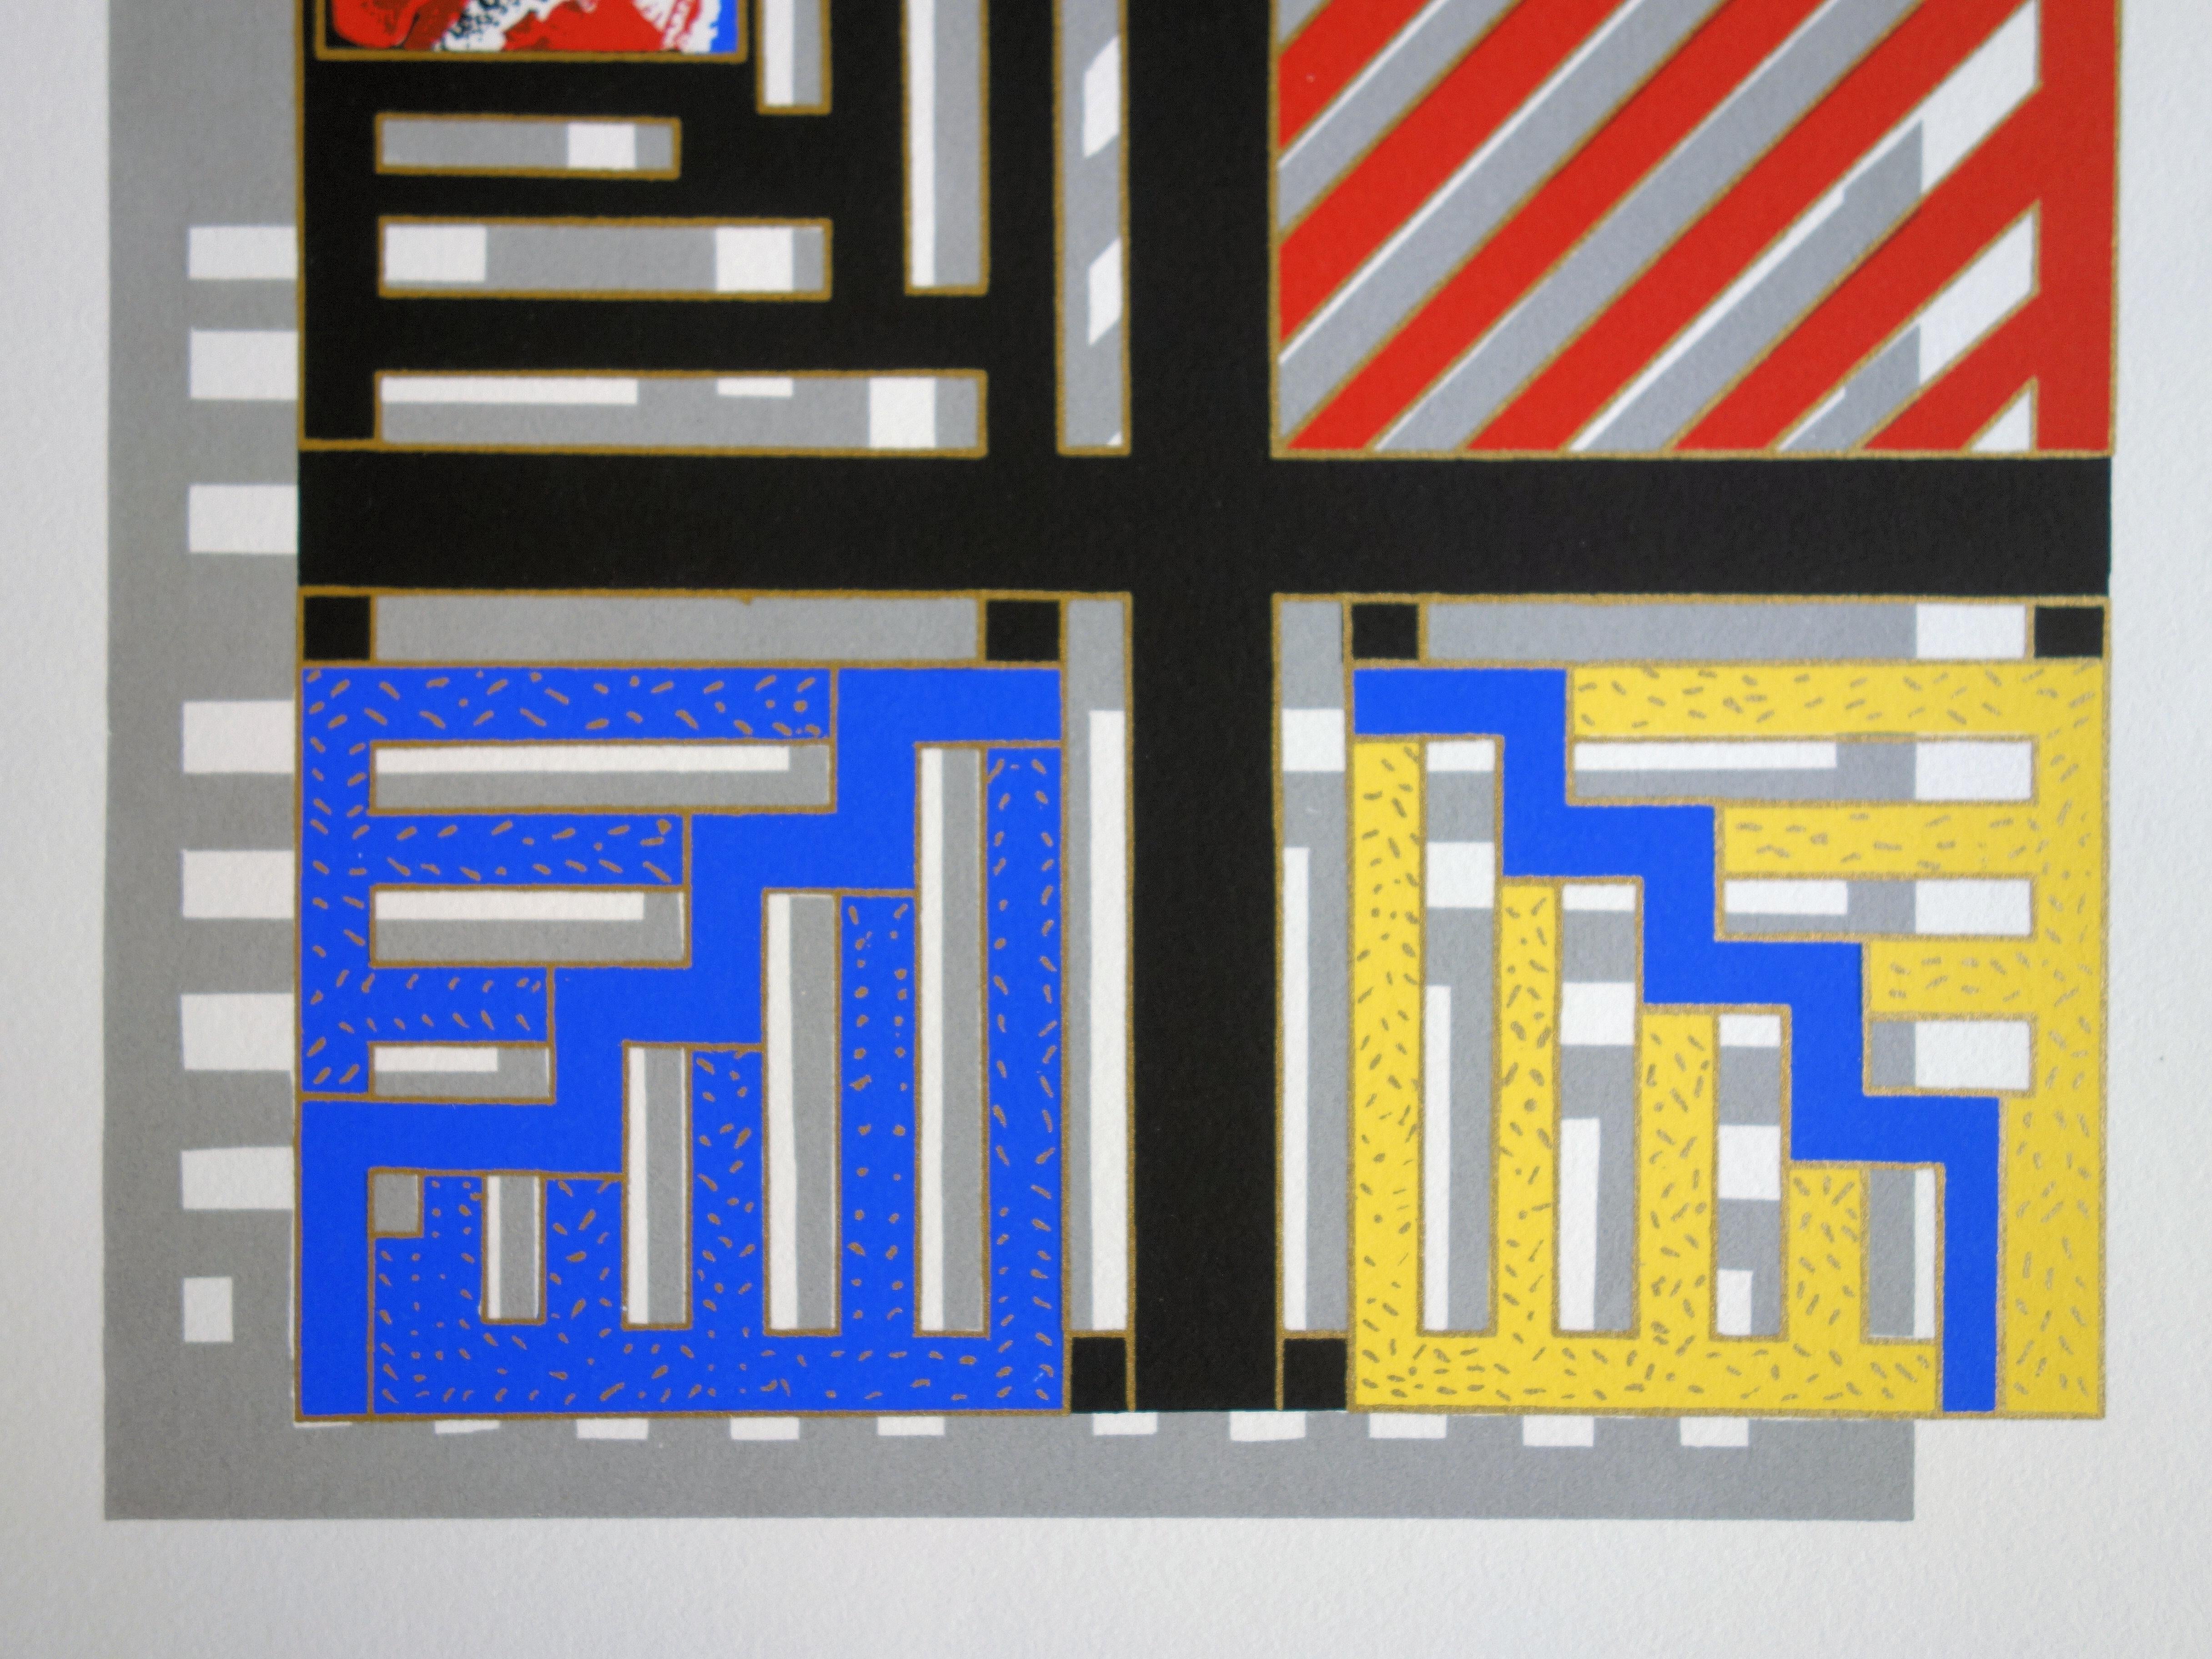 Farbefarbenes geometrisches Muster - Original handsignierter Siebdruck /60ex (Geometrische Abstraktion), Print, von Nivése